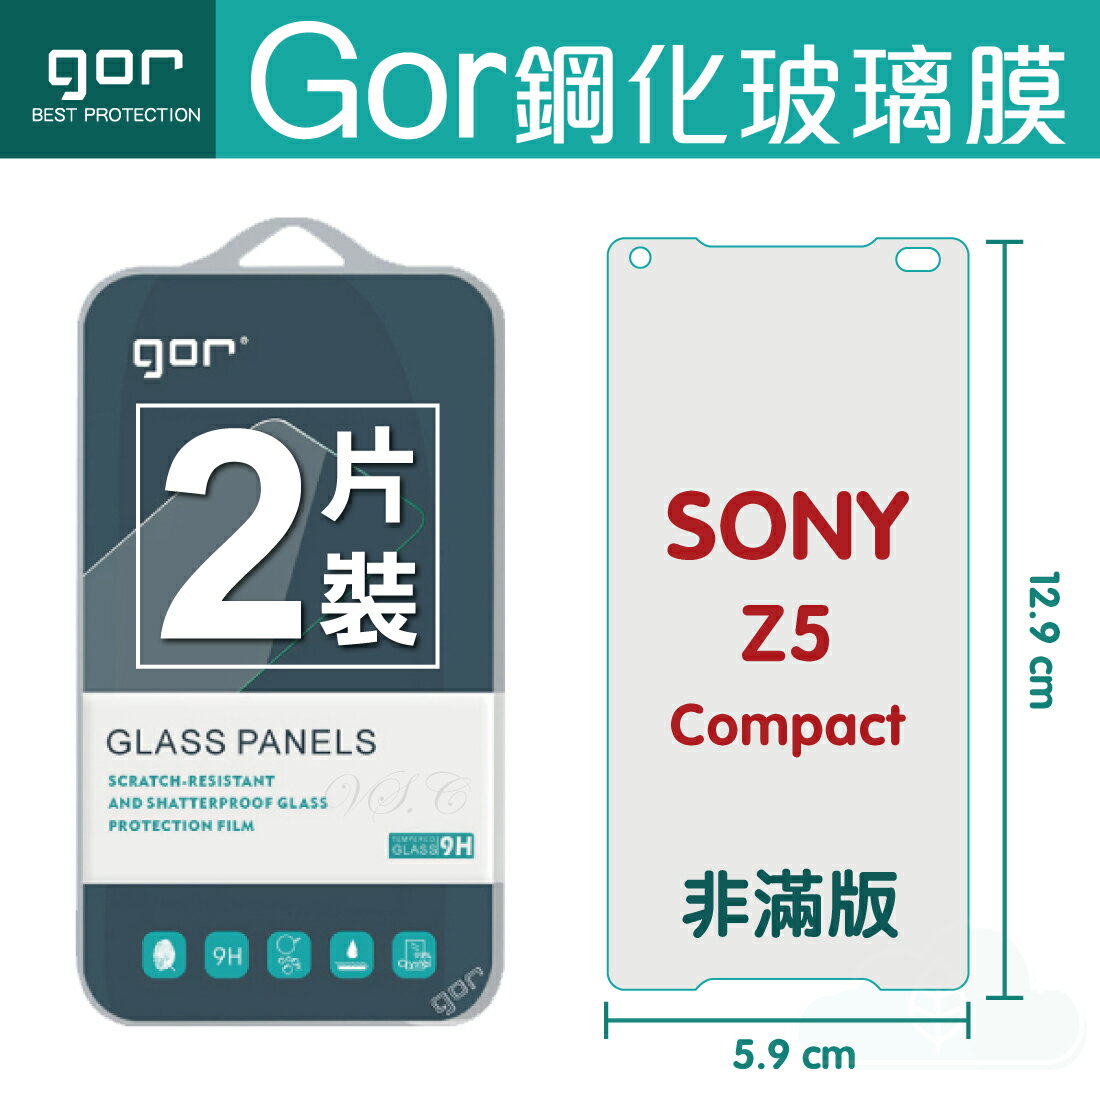 【SONY】GOR 9H Xperia Z5 Compact 鋼化 玻璃 保護貼 全透明非滿版 兩片裝【全館滿299免運費】